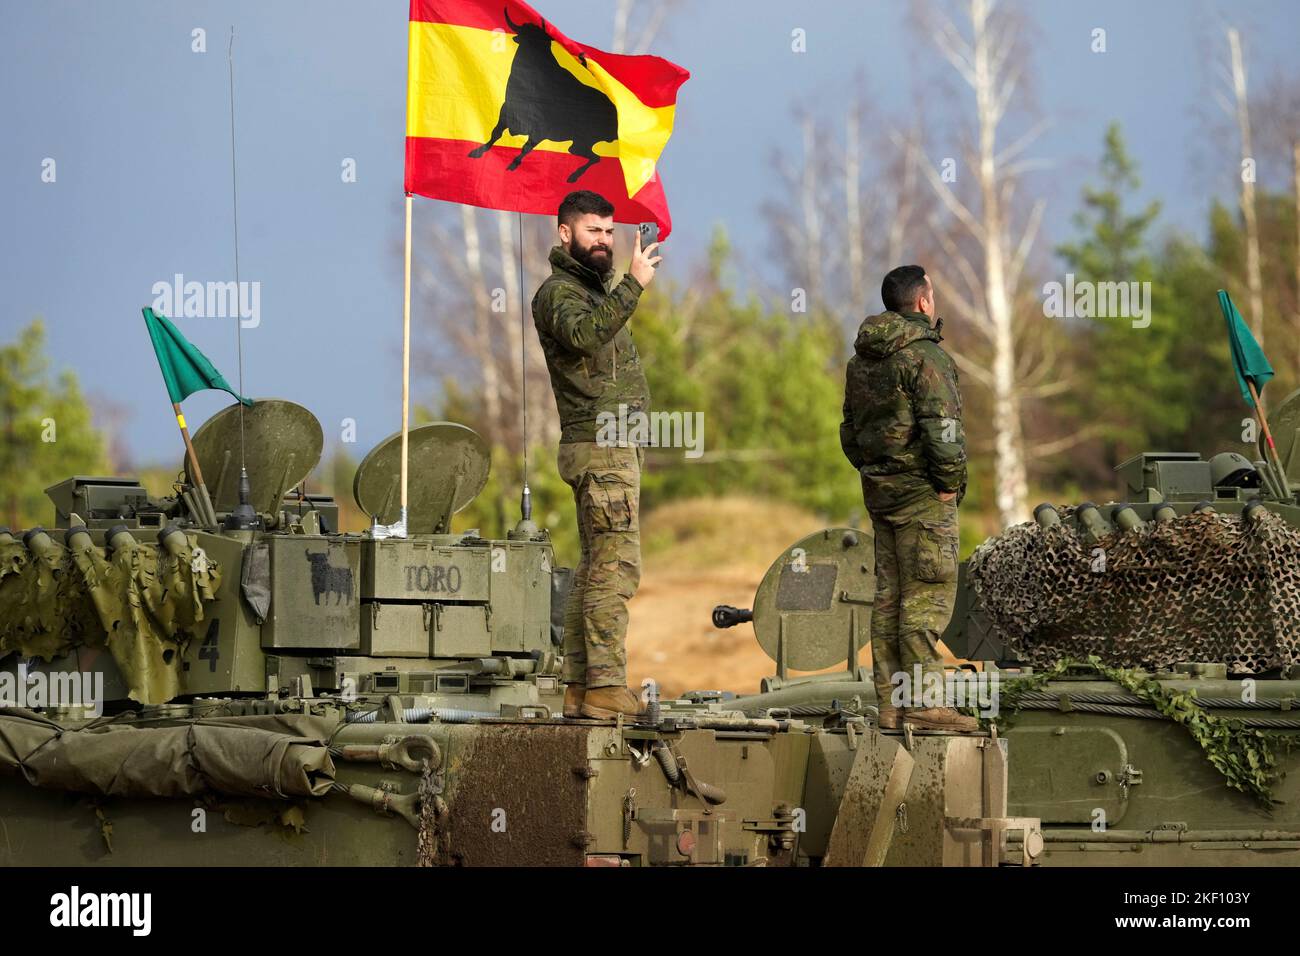 Un militaire espagnol du groupe de combat OTAN pour la présence avancée renforcée prend une photo avant un exercice de tir en direct, lors d'un exercice militaire Iron Spear 2022 à Adazi, en Lettonie, en 15 novembre 2022. REUTERS/Ints Kalnins Banque D'Images